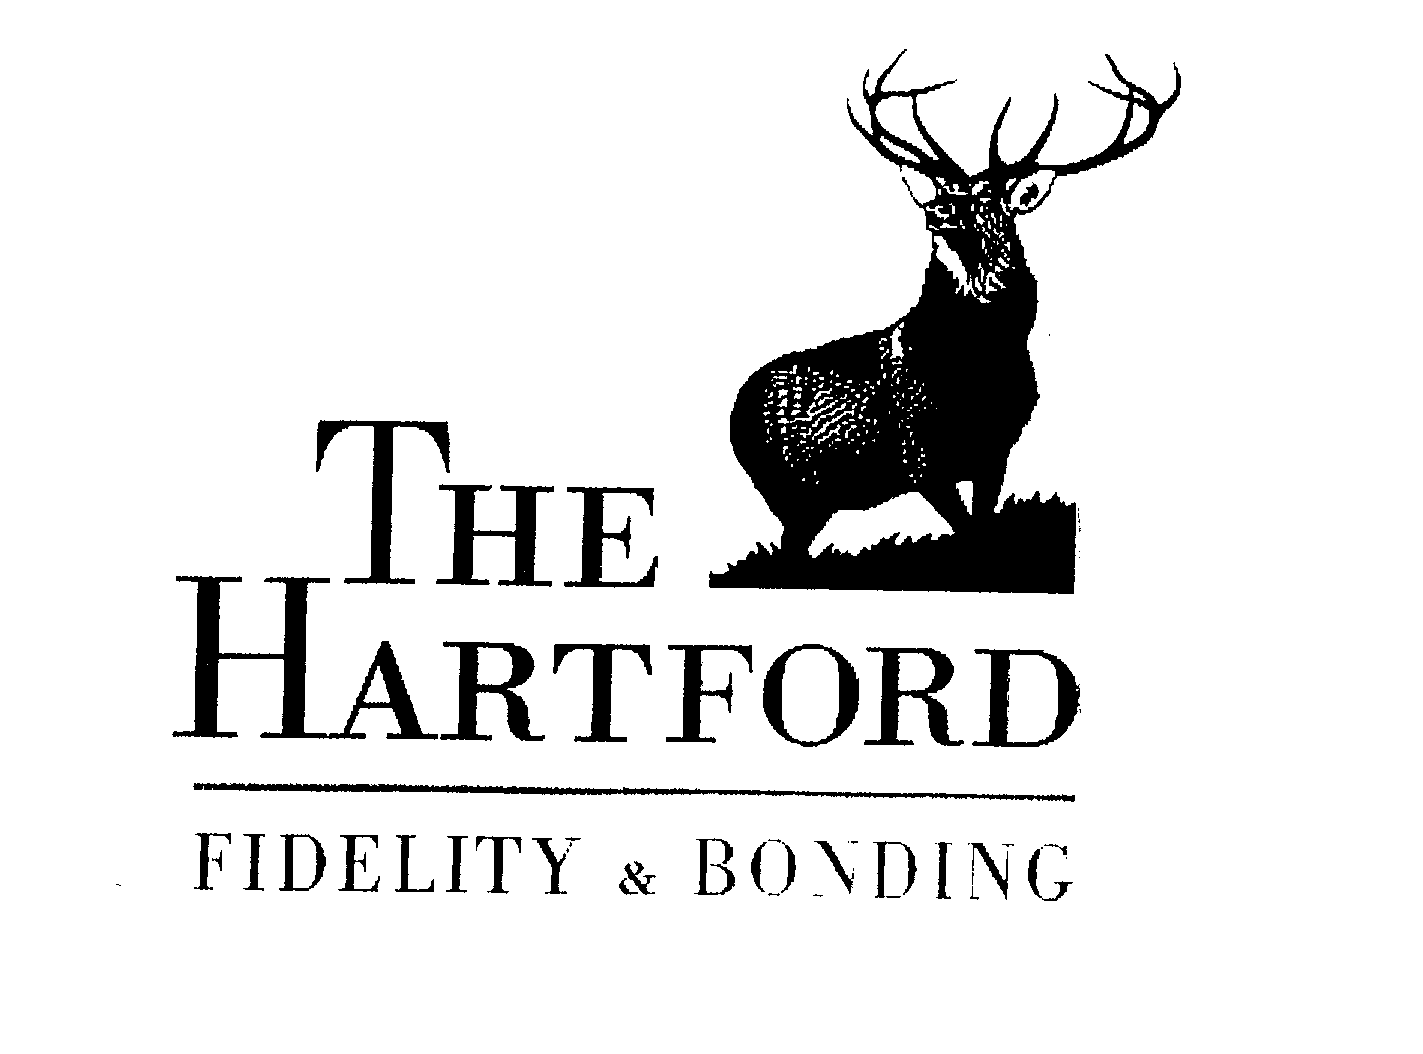  THE HARTFORD FIDELITY &amp; BONDING